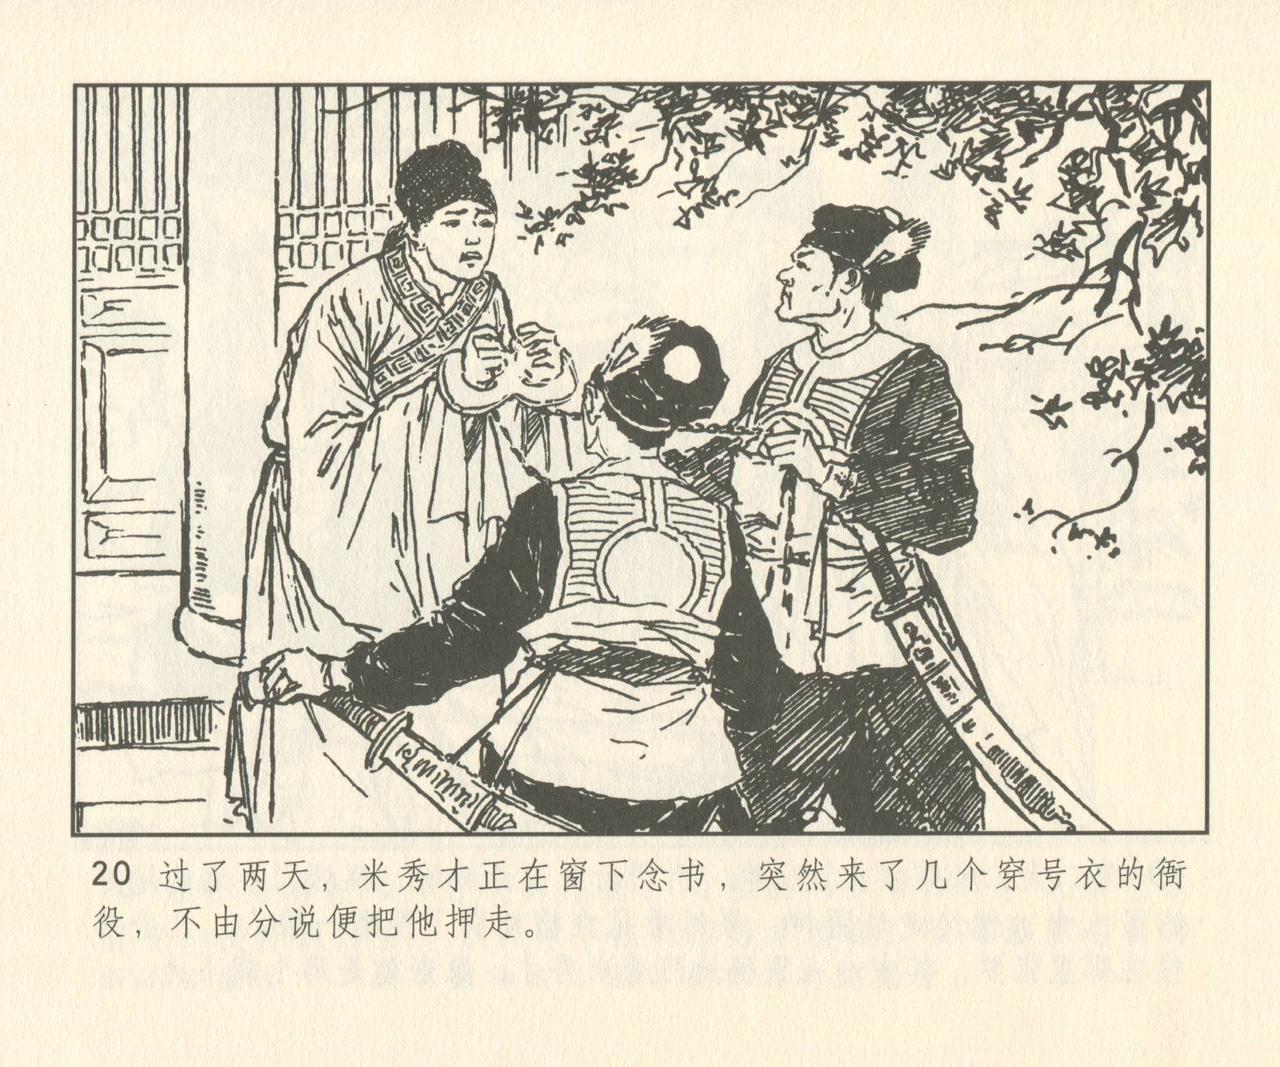 聊斋志异 张玮等绘 天津人民美术出版社 卷二十一 ~ 三十 148